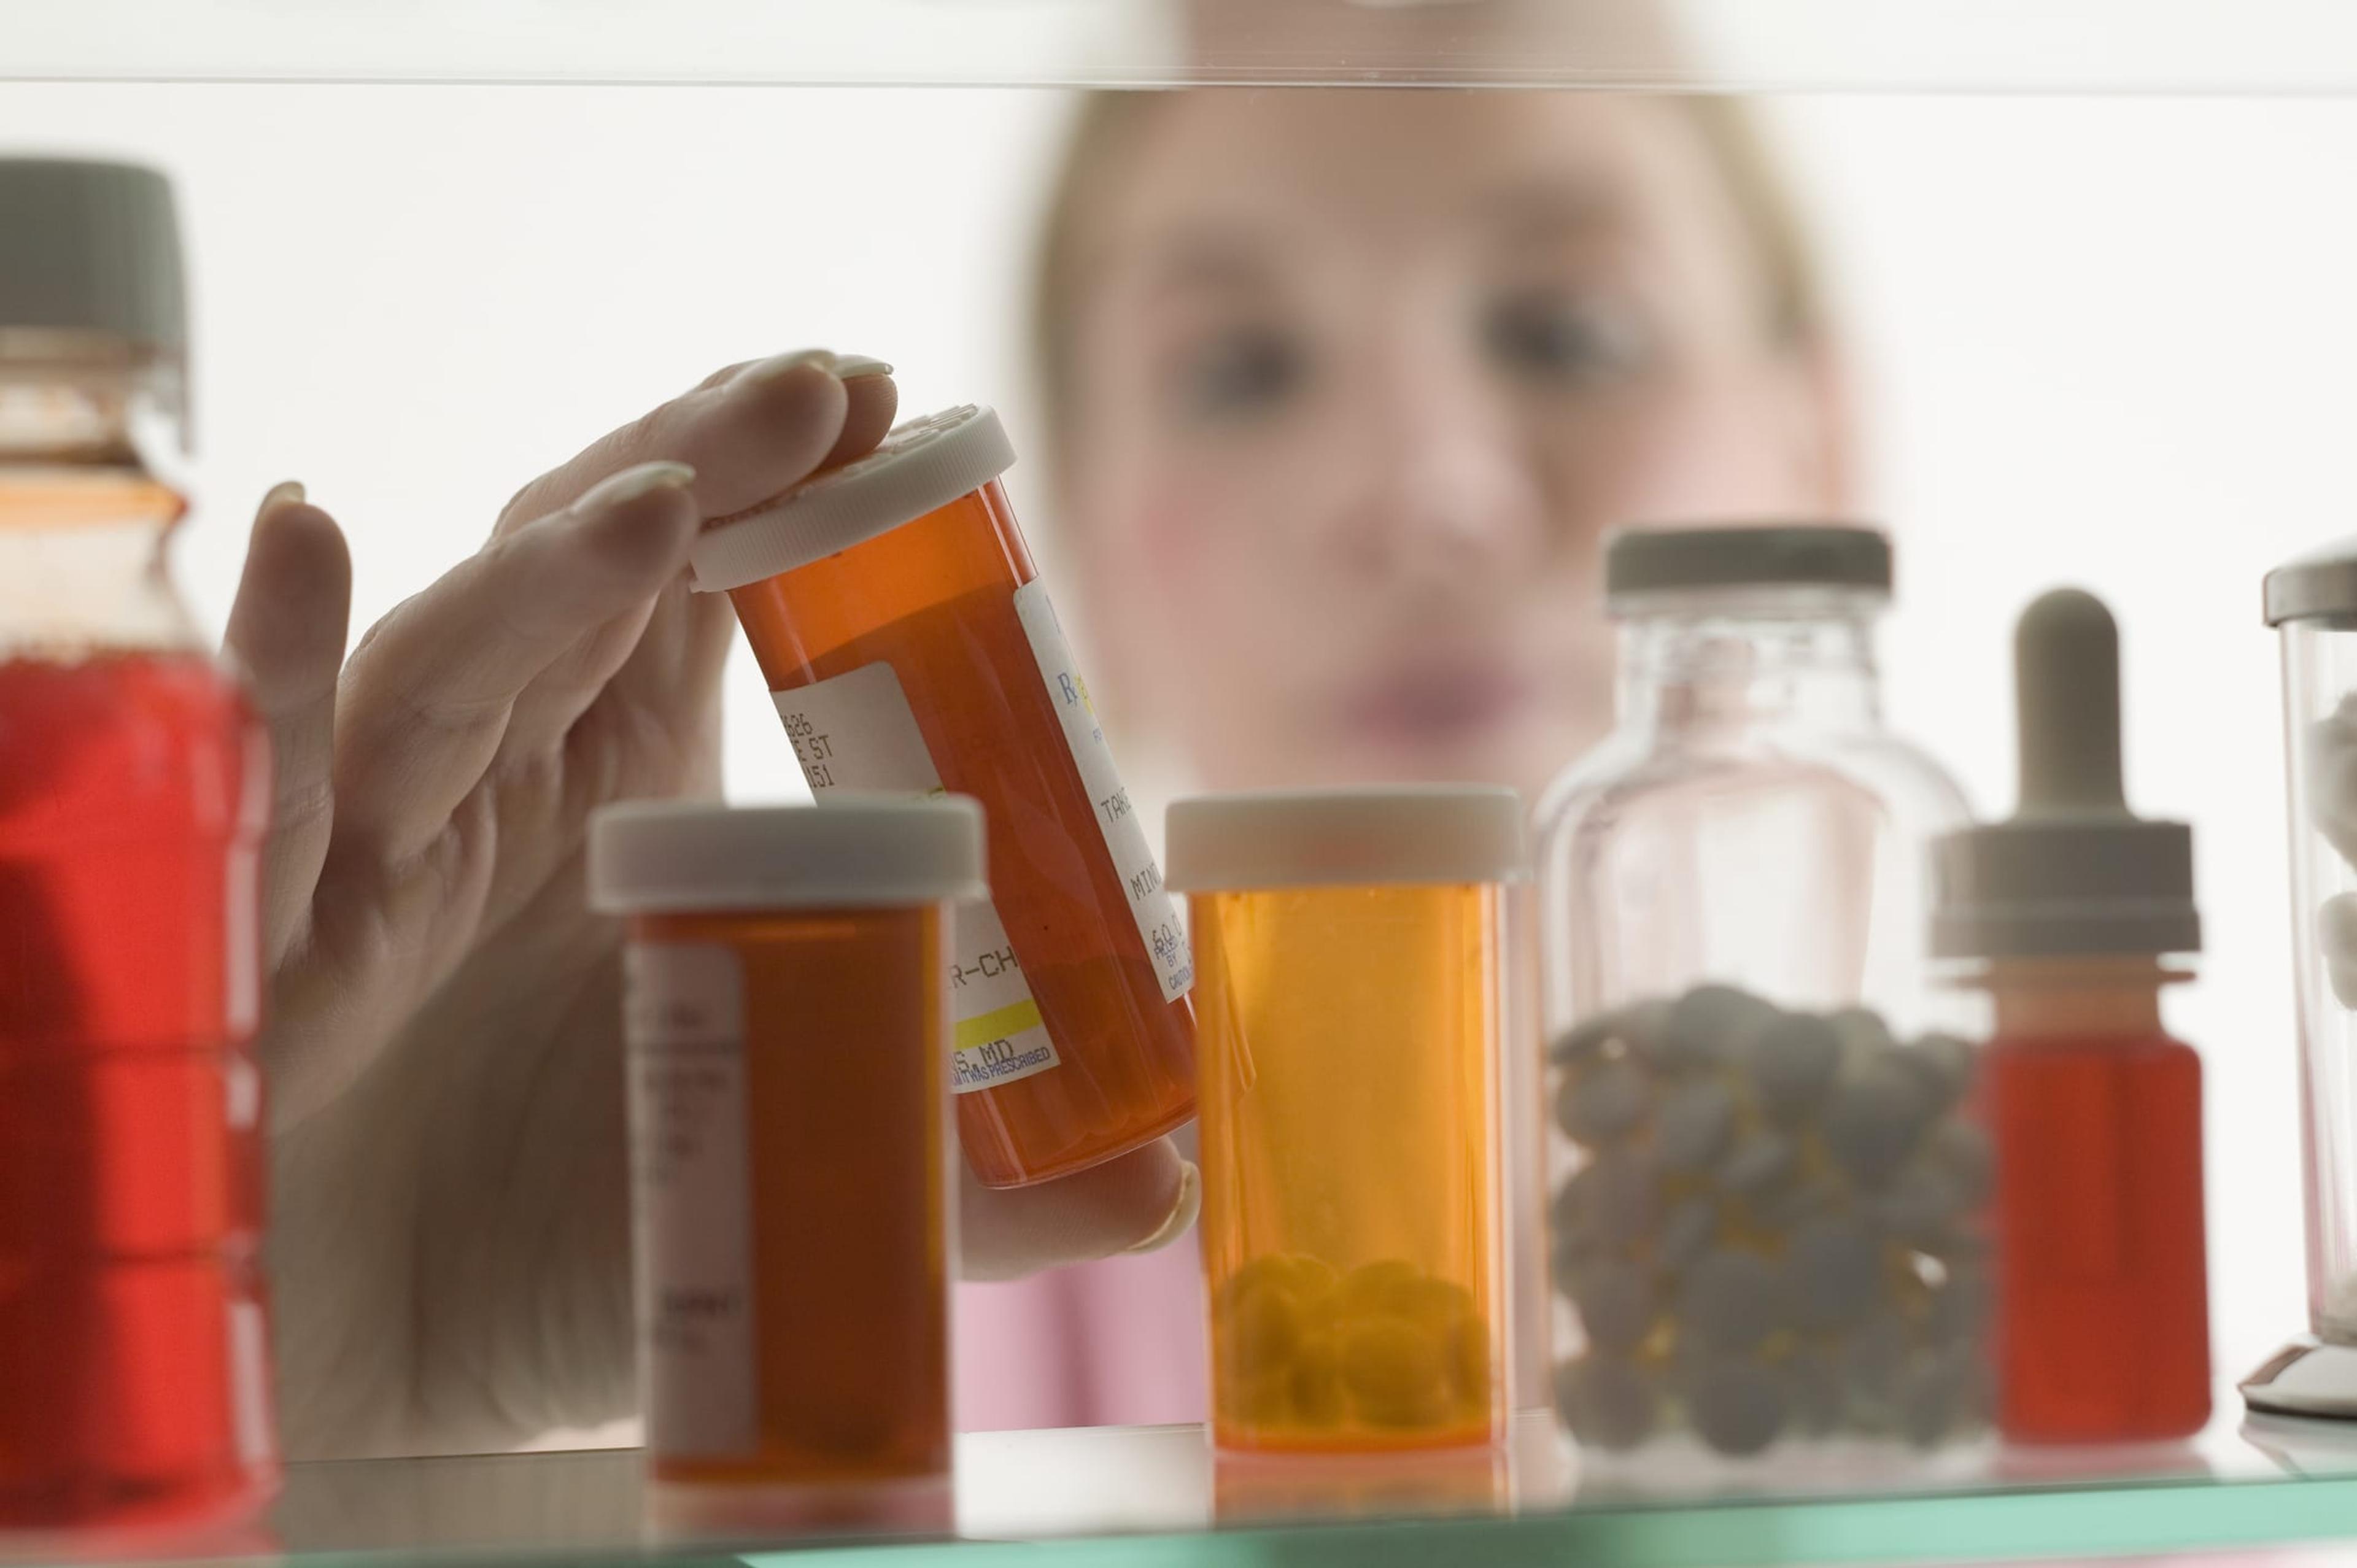 Person grabbing prescription pills from medicine cabinet